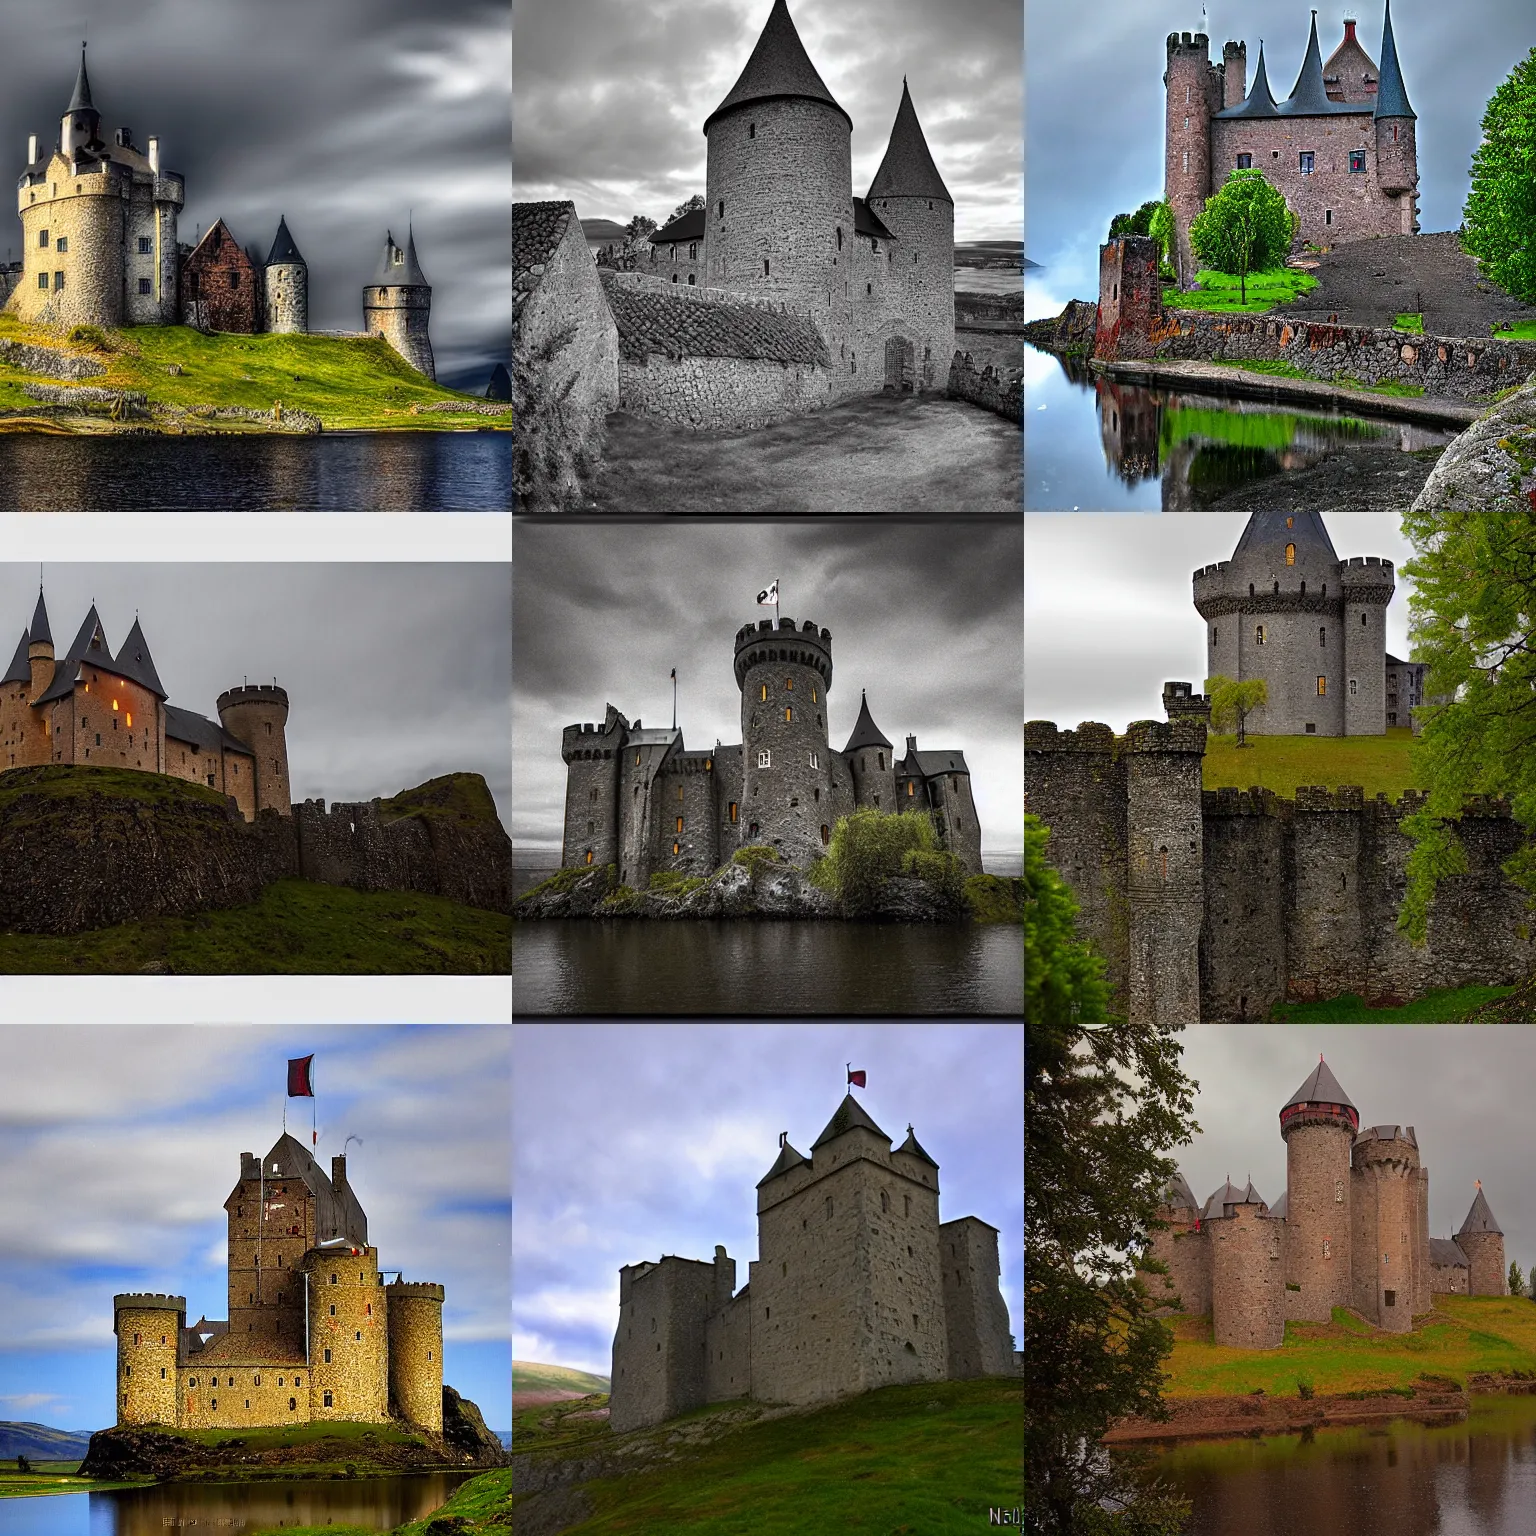 Prompt: medieval castle, by einar hakonarson